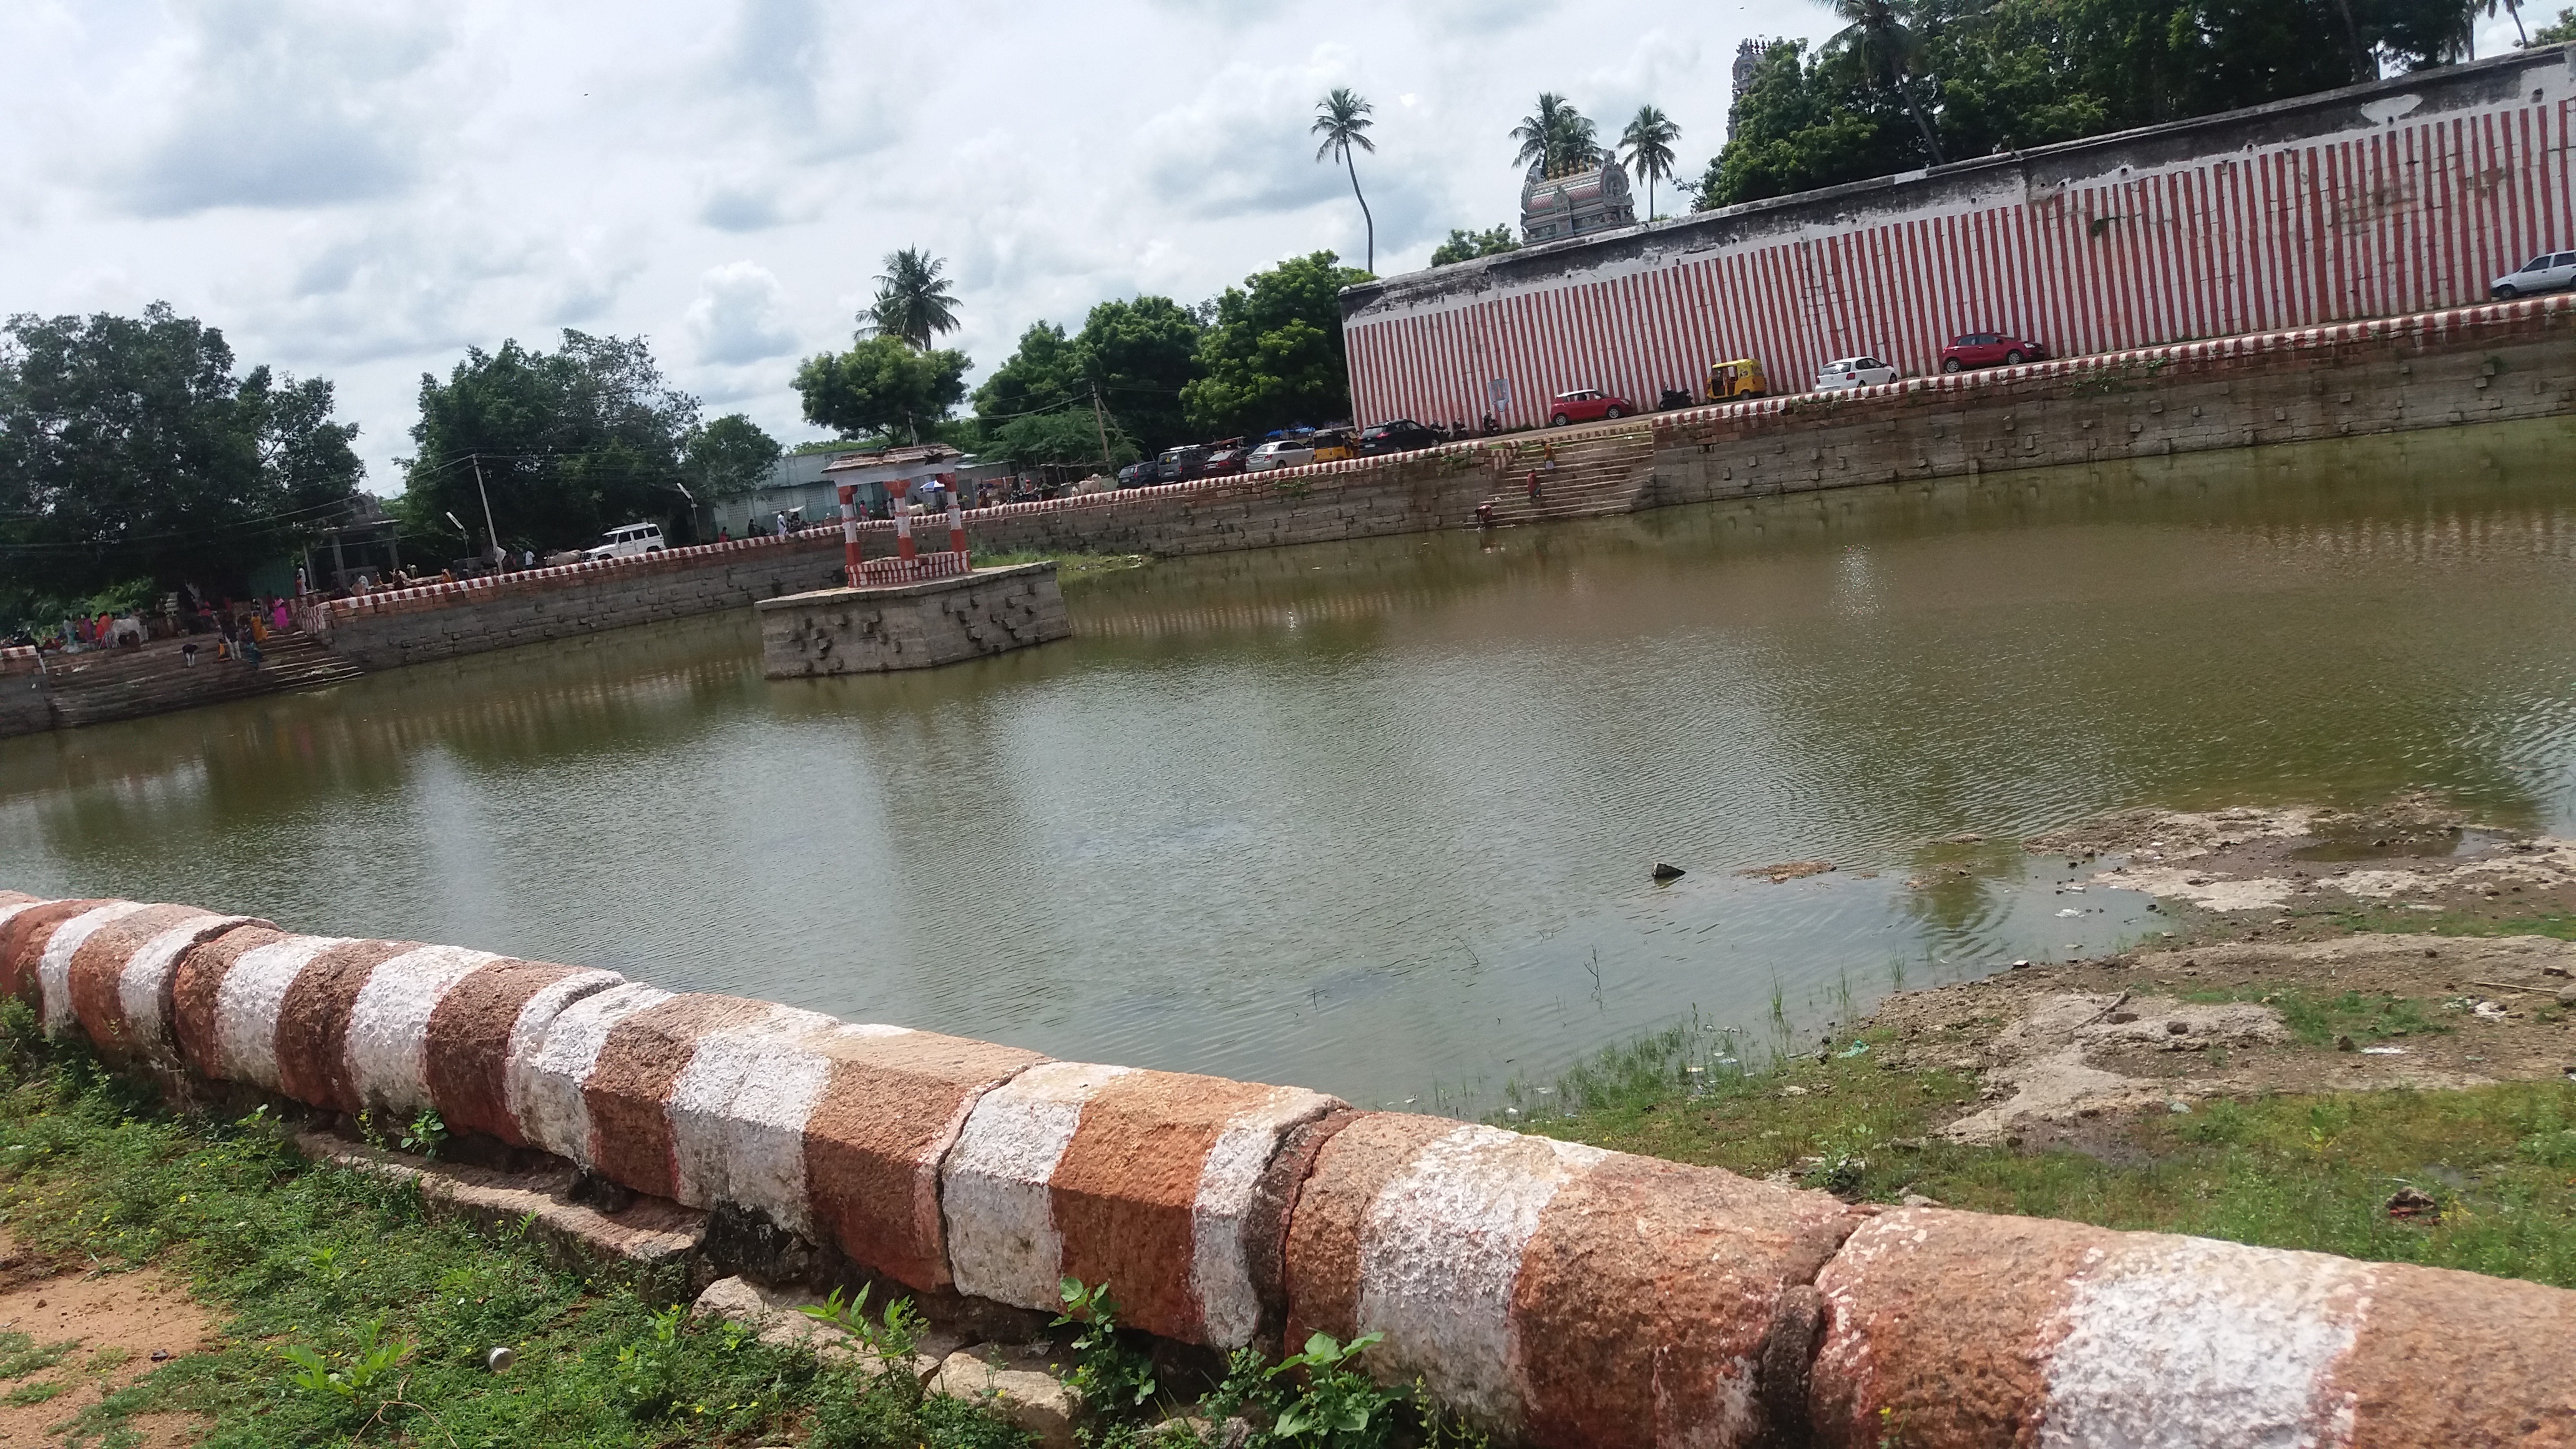 Thirumohoor temple tank